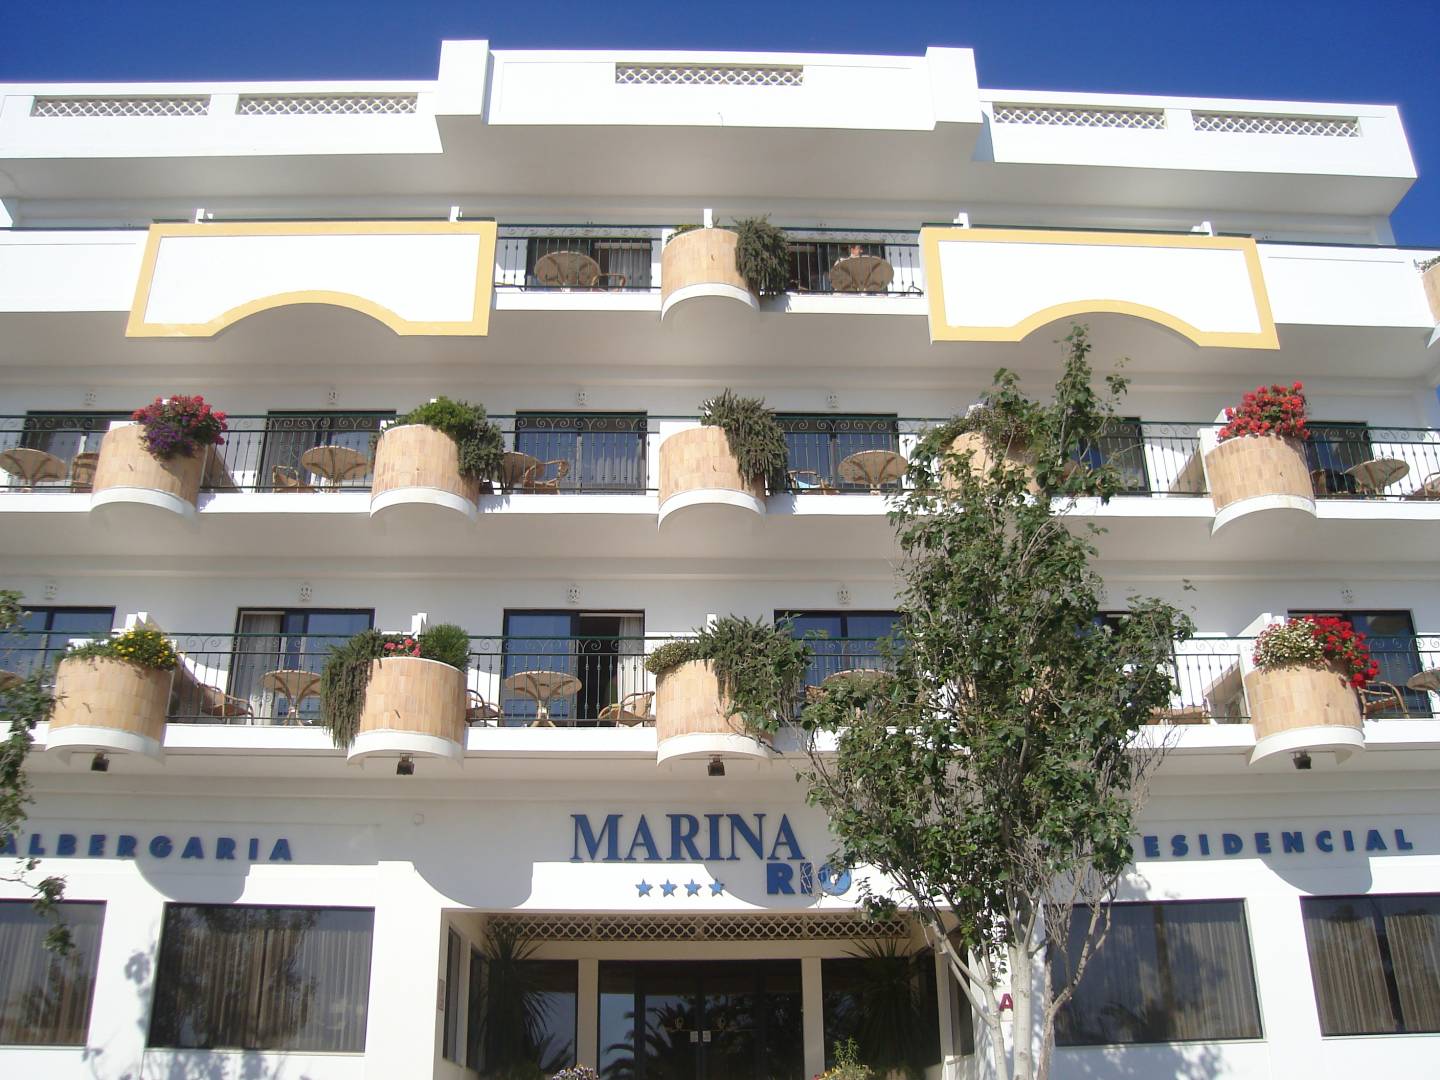 Marina Rio